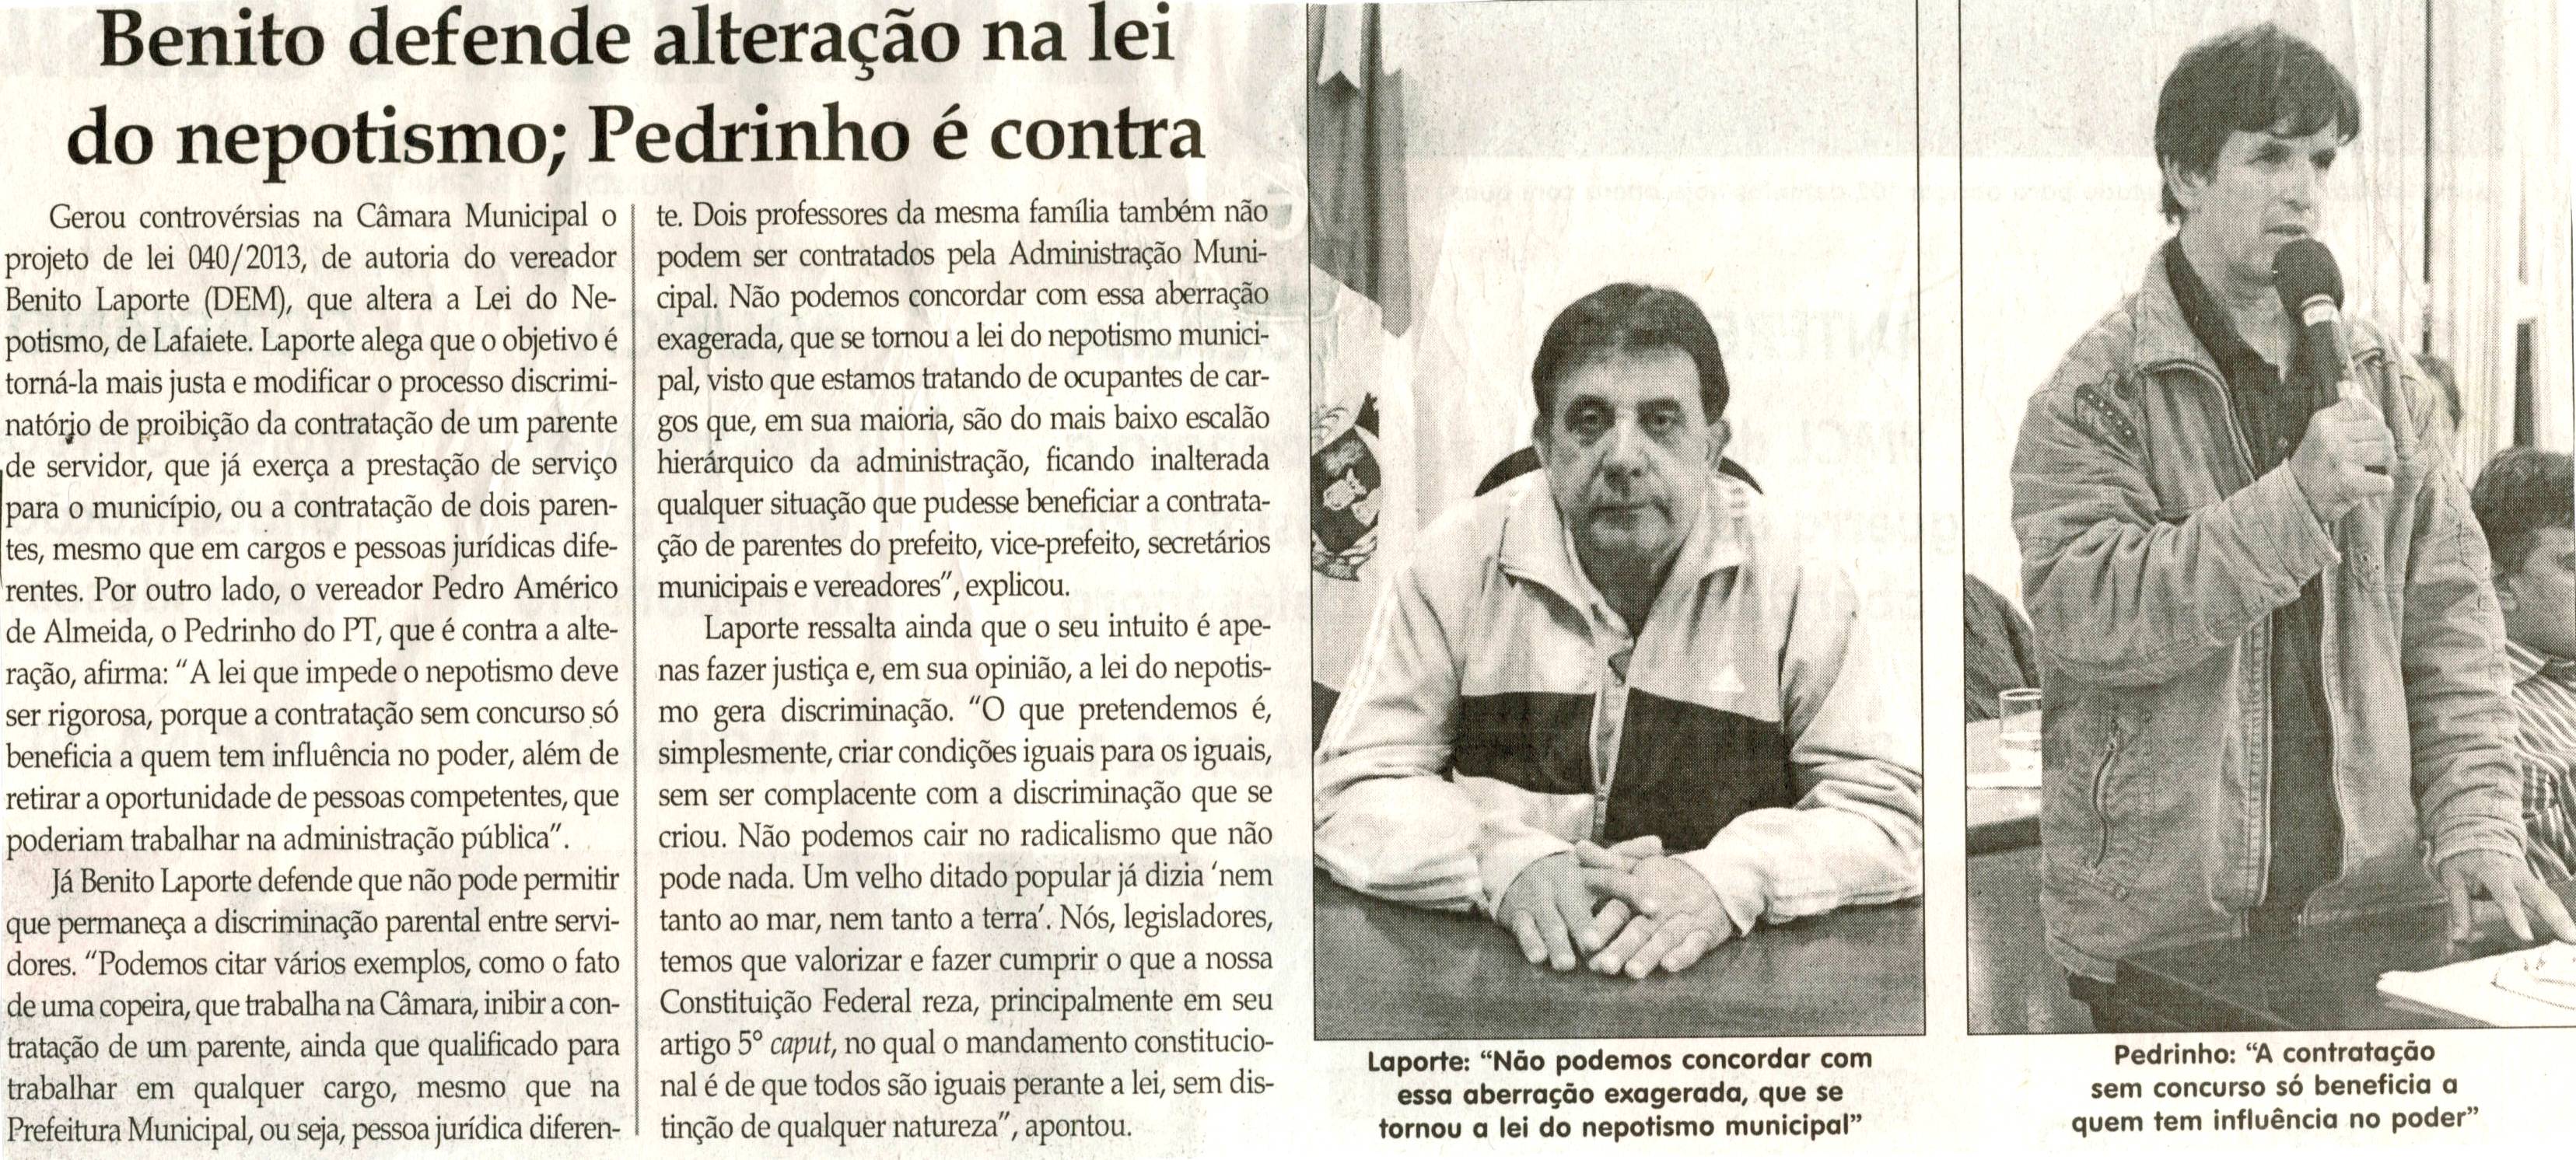 Benito defende alteração na lei do nepotismo; Pedrinho é contra. Jornal Correio da Cidade, Conselheiro Lafaiete, 30 mar. 2013 a 05 abr. 2013, p. 2. 